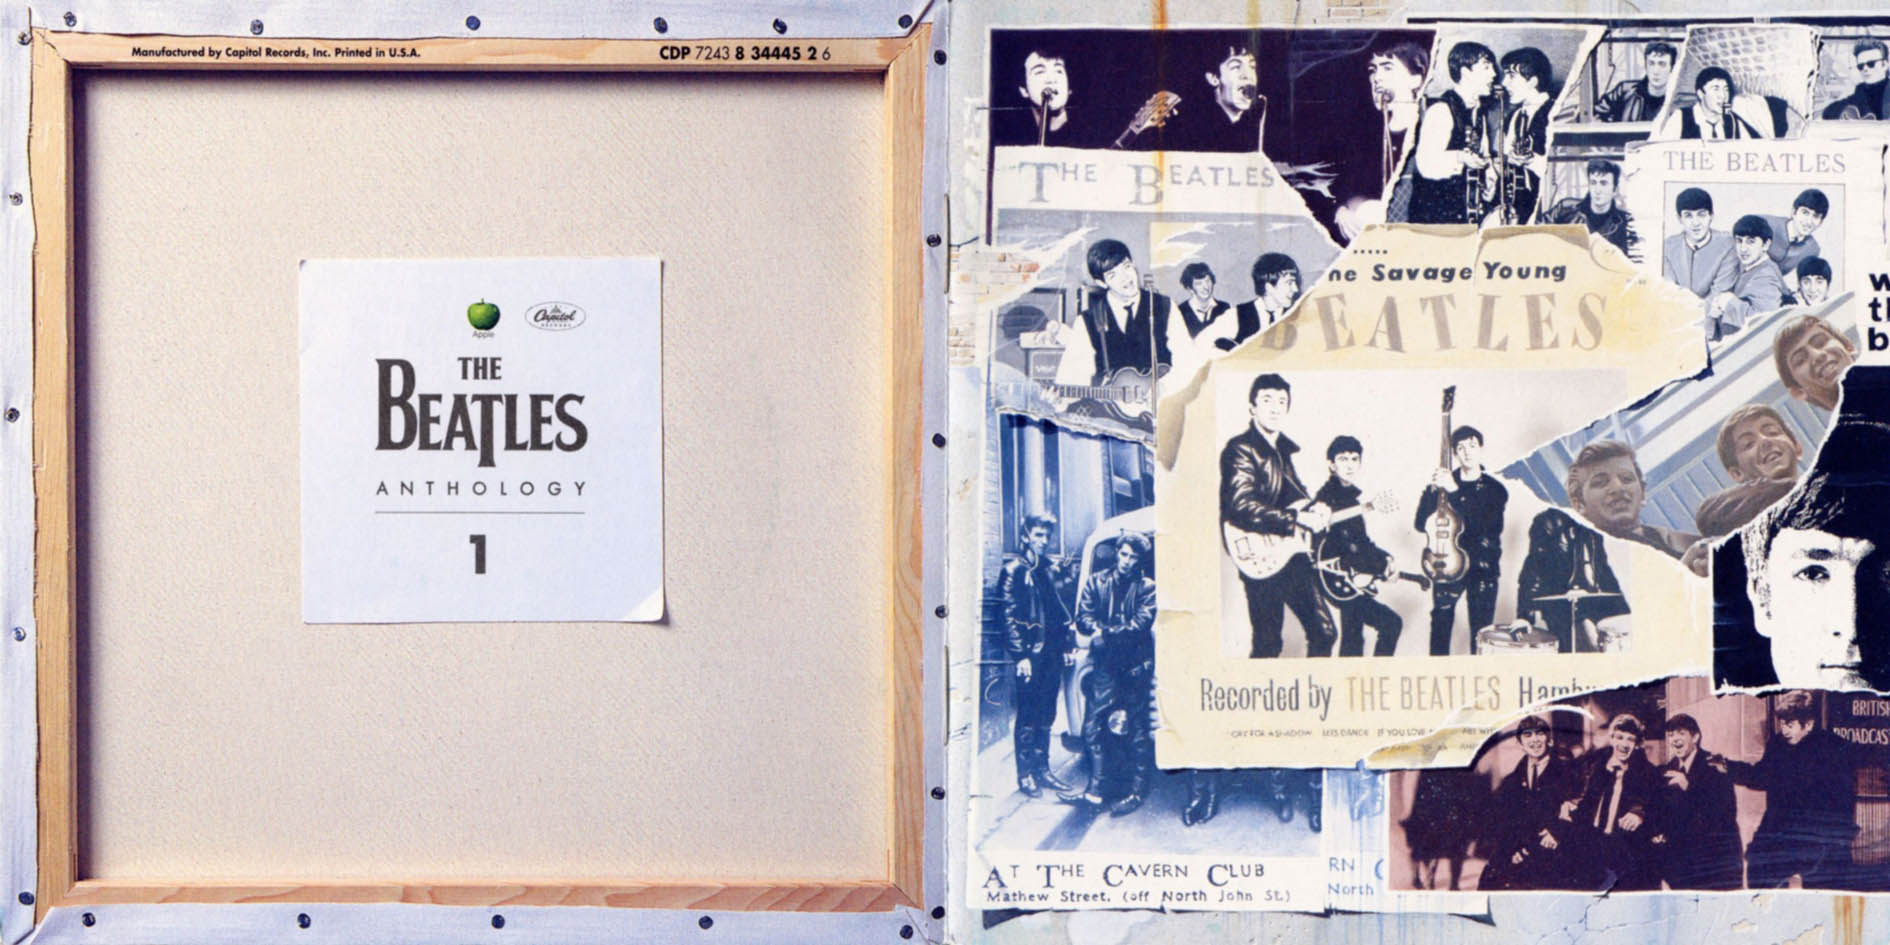 The Beatles - 1995 - Anthology 1 2 CDs - The Beatles - Anthology 1 - Front  Inside.jpg